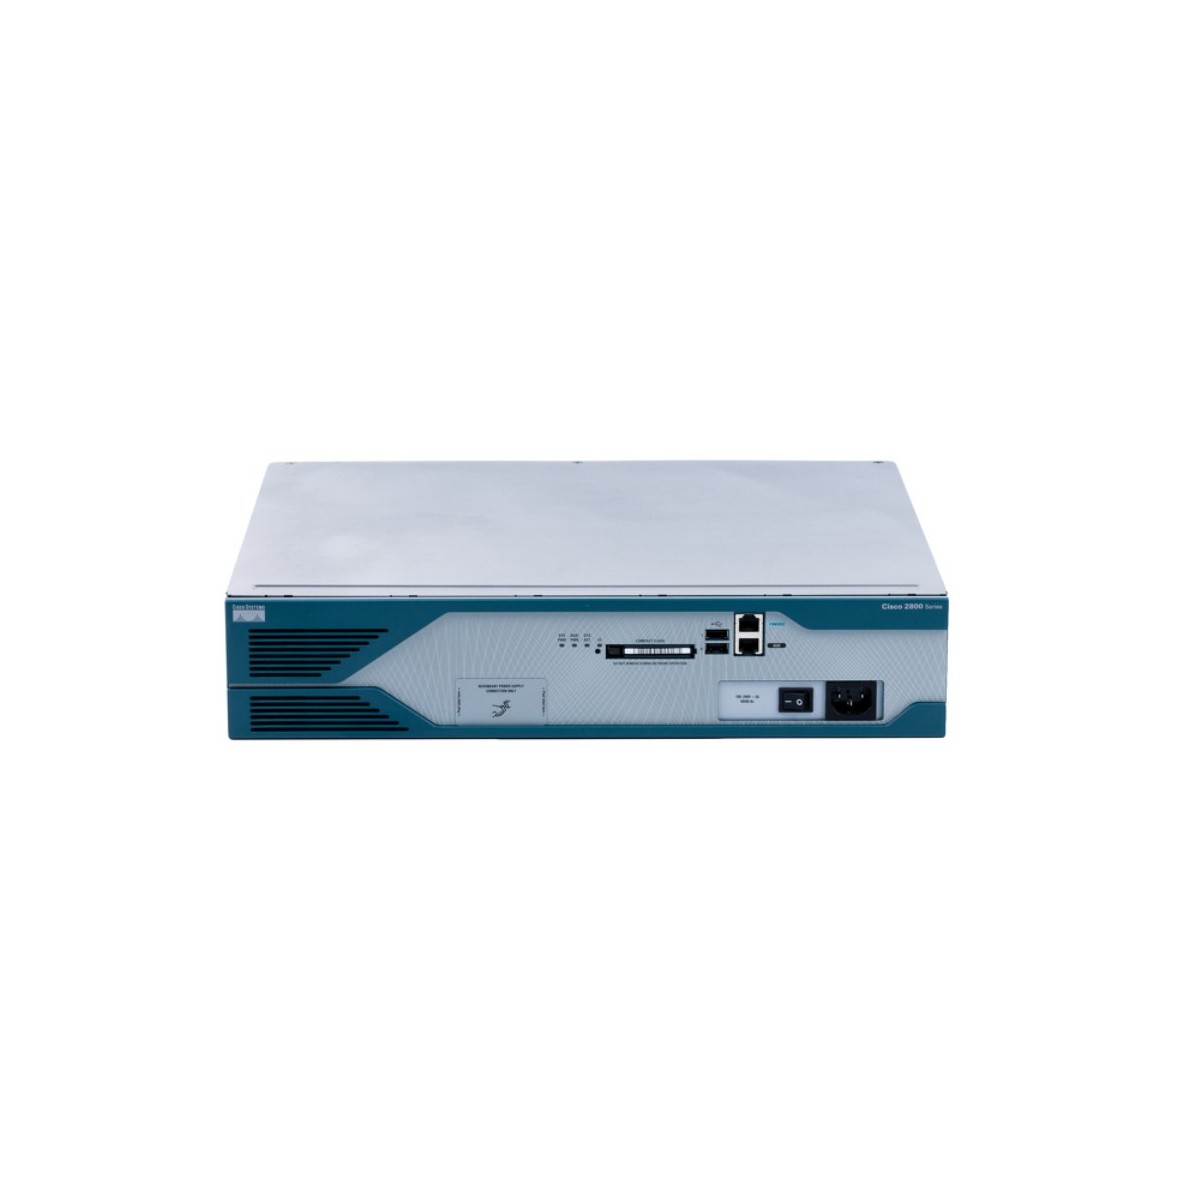 Cisco 2851 AC PWR 2GE IHWIC 3PVDM 1NME-XD 2AIM IP BASE - Router - WLAN